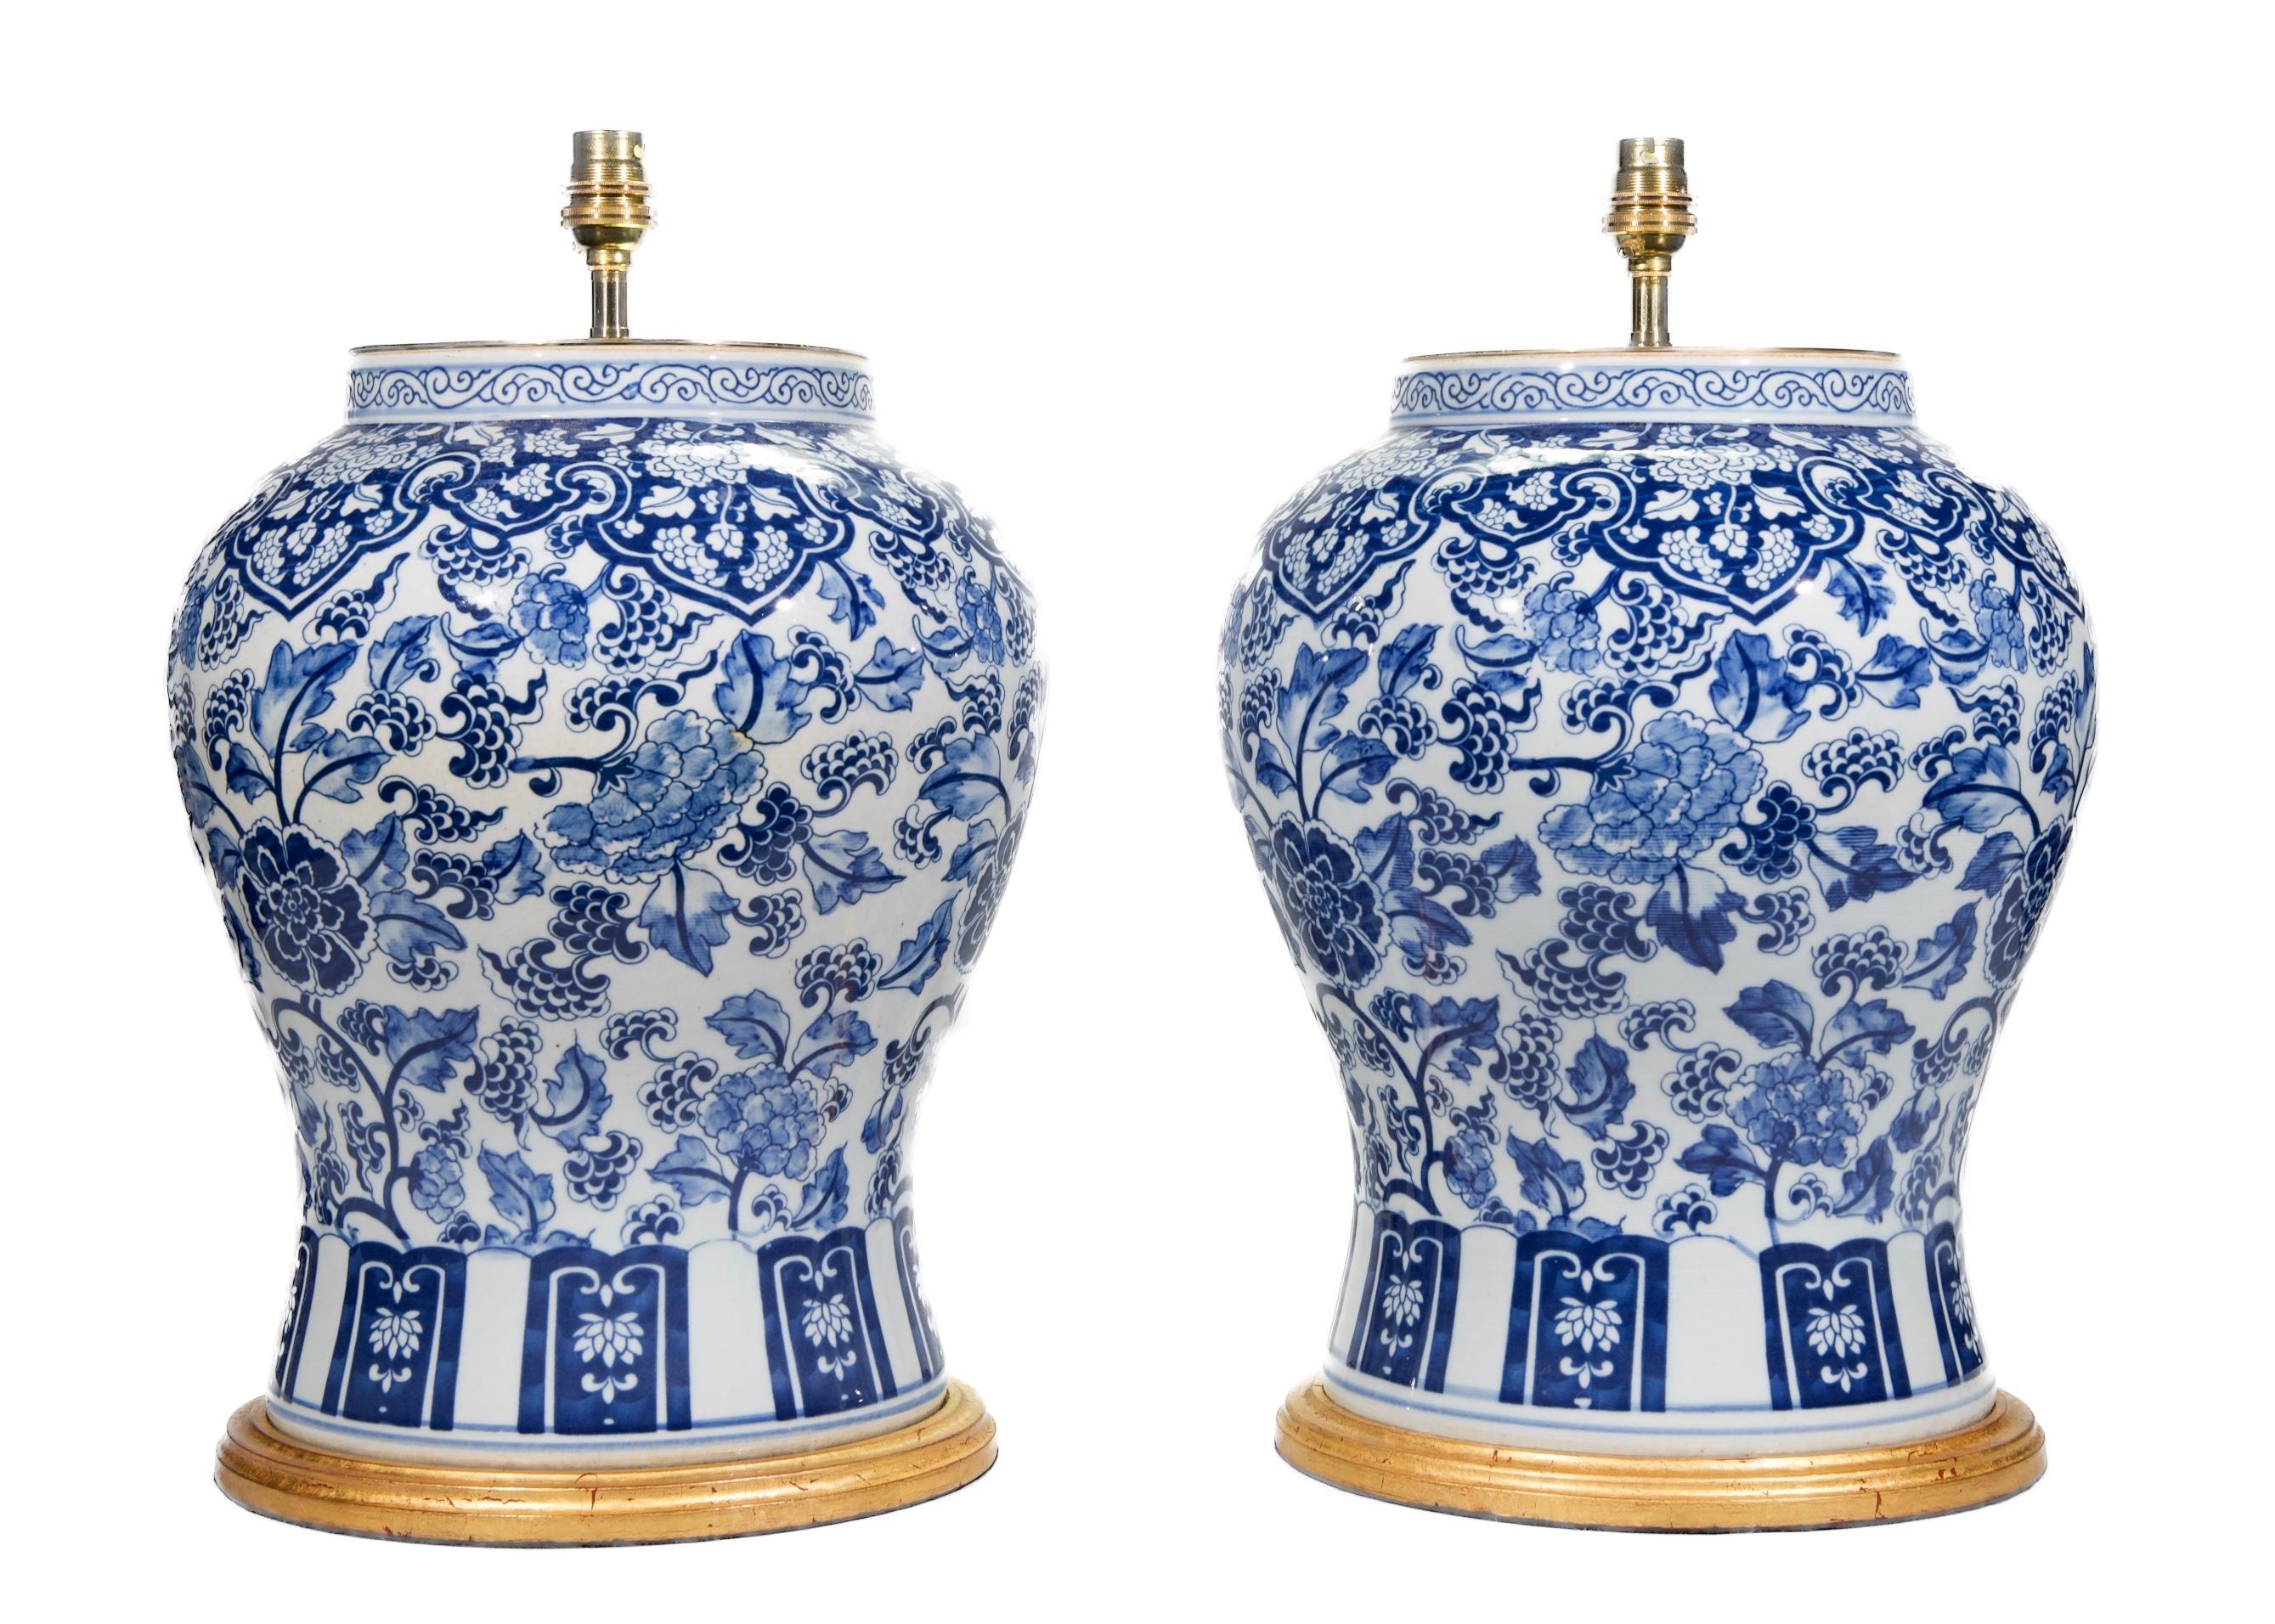 Une belle paire de vases de temple bleus et blancs, décorés à la manière Kangxi de fleurs et de feuillages stylisés dans des tons bleus sur un fond blanc, maintenant montés comme lampes avec des bases dorées à la main.

Hauteur des vases : 14 3/4 in